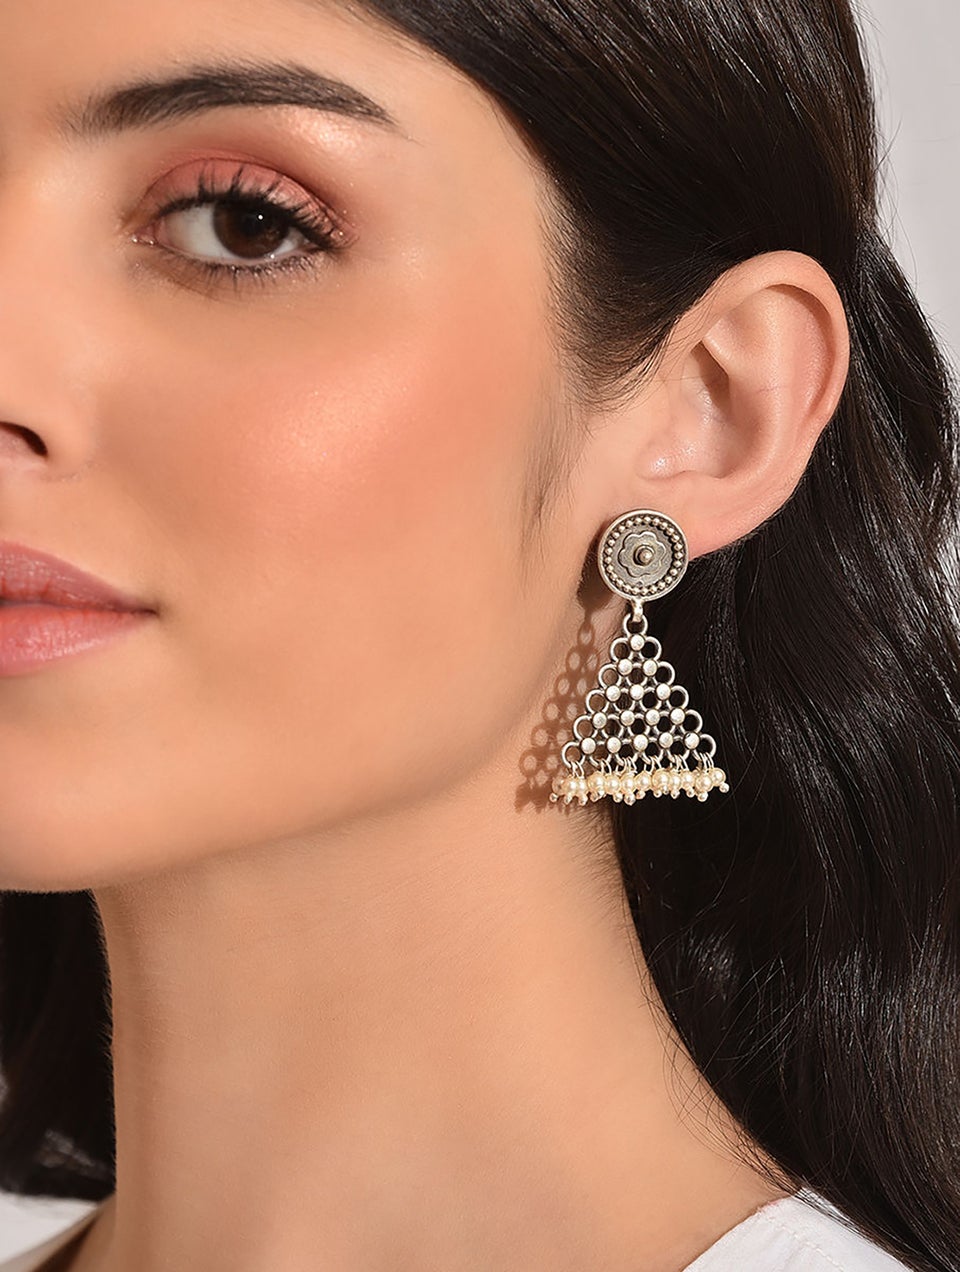 Women Silver Dangler Earrings with Pearls